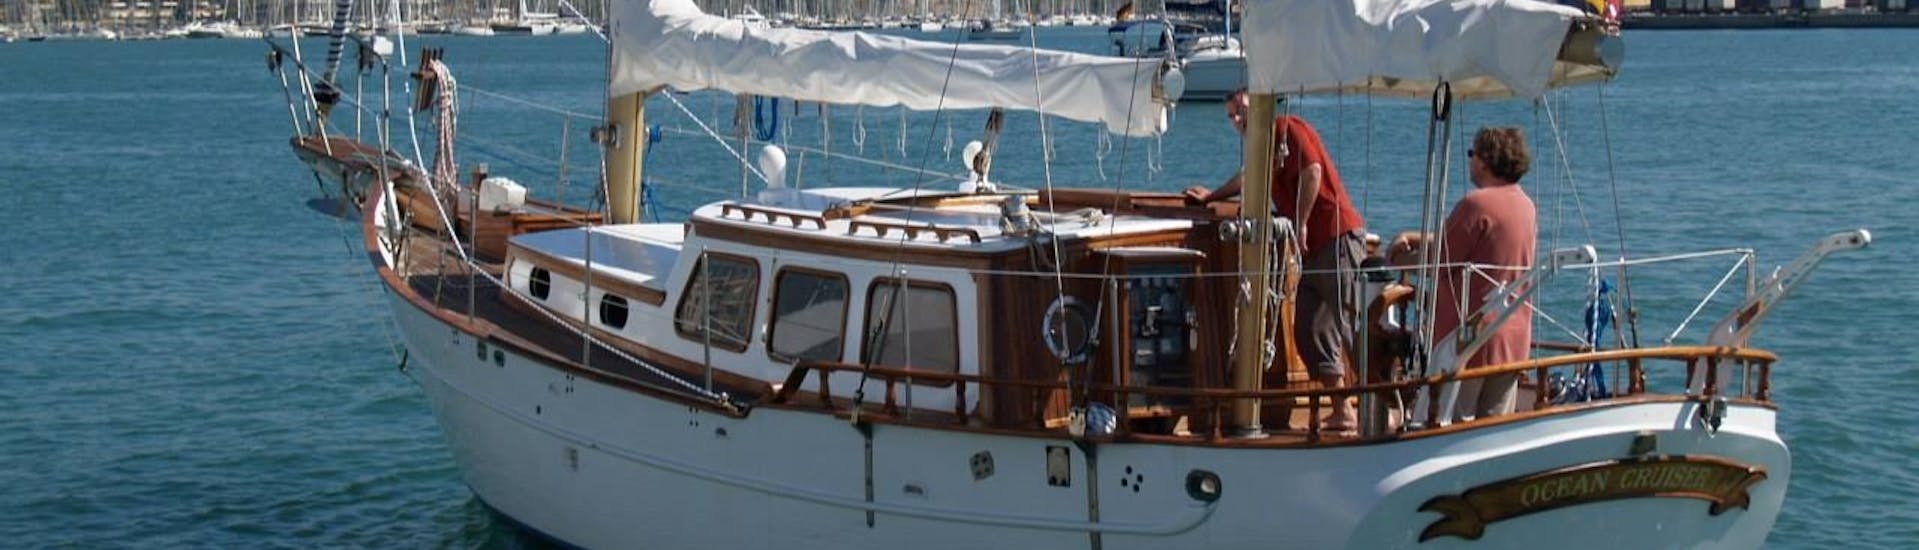 L'équipage naviguant sur la Costa del Sol, lors d'une balade en voilier historique sur la Costa del Sol avec Ocean Cruise Malaga.